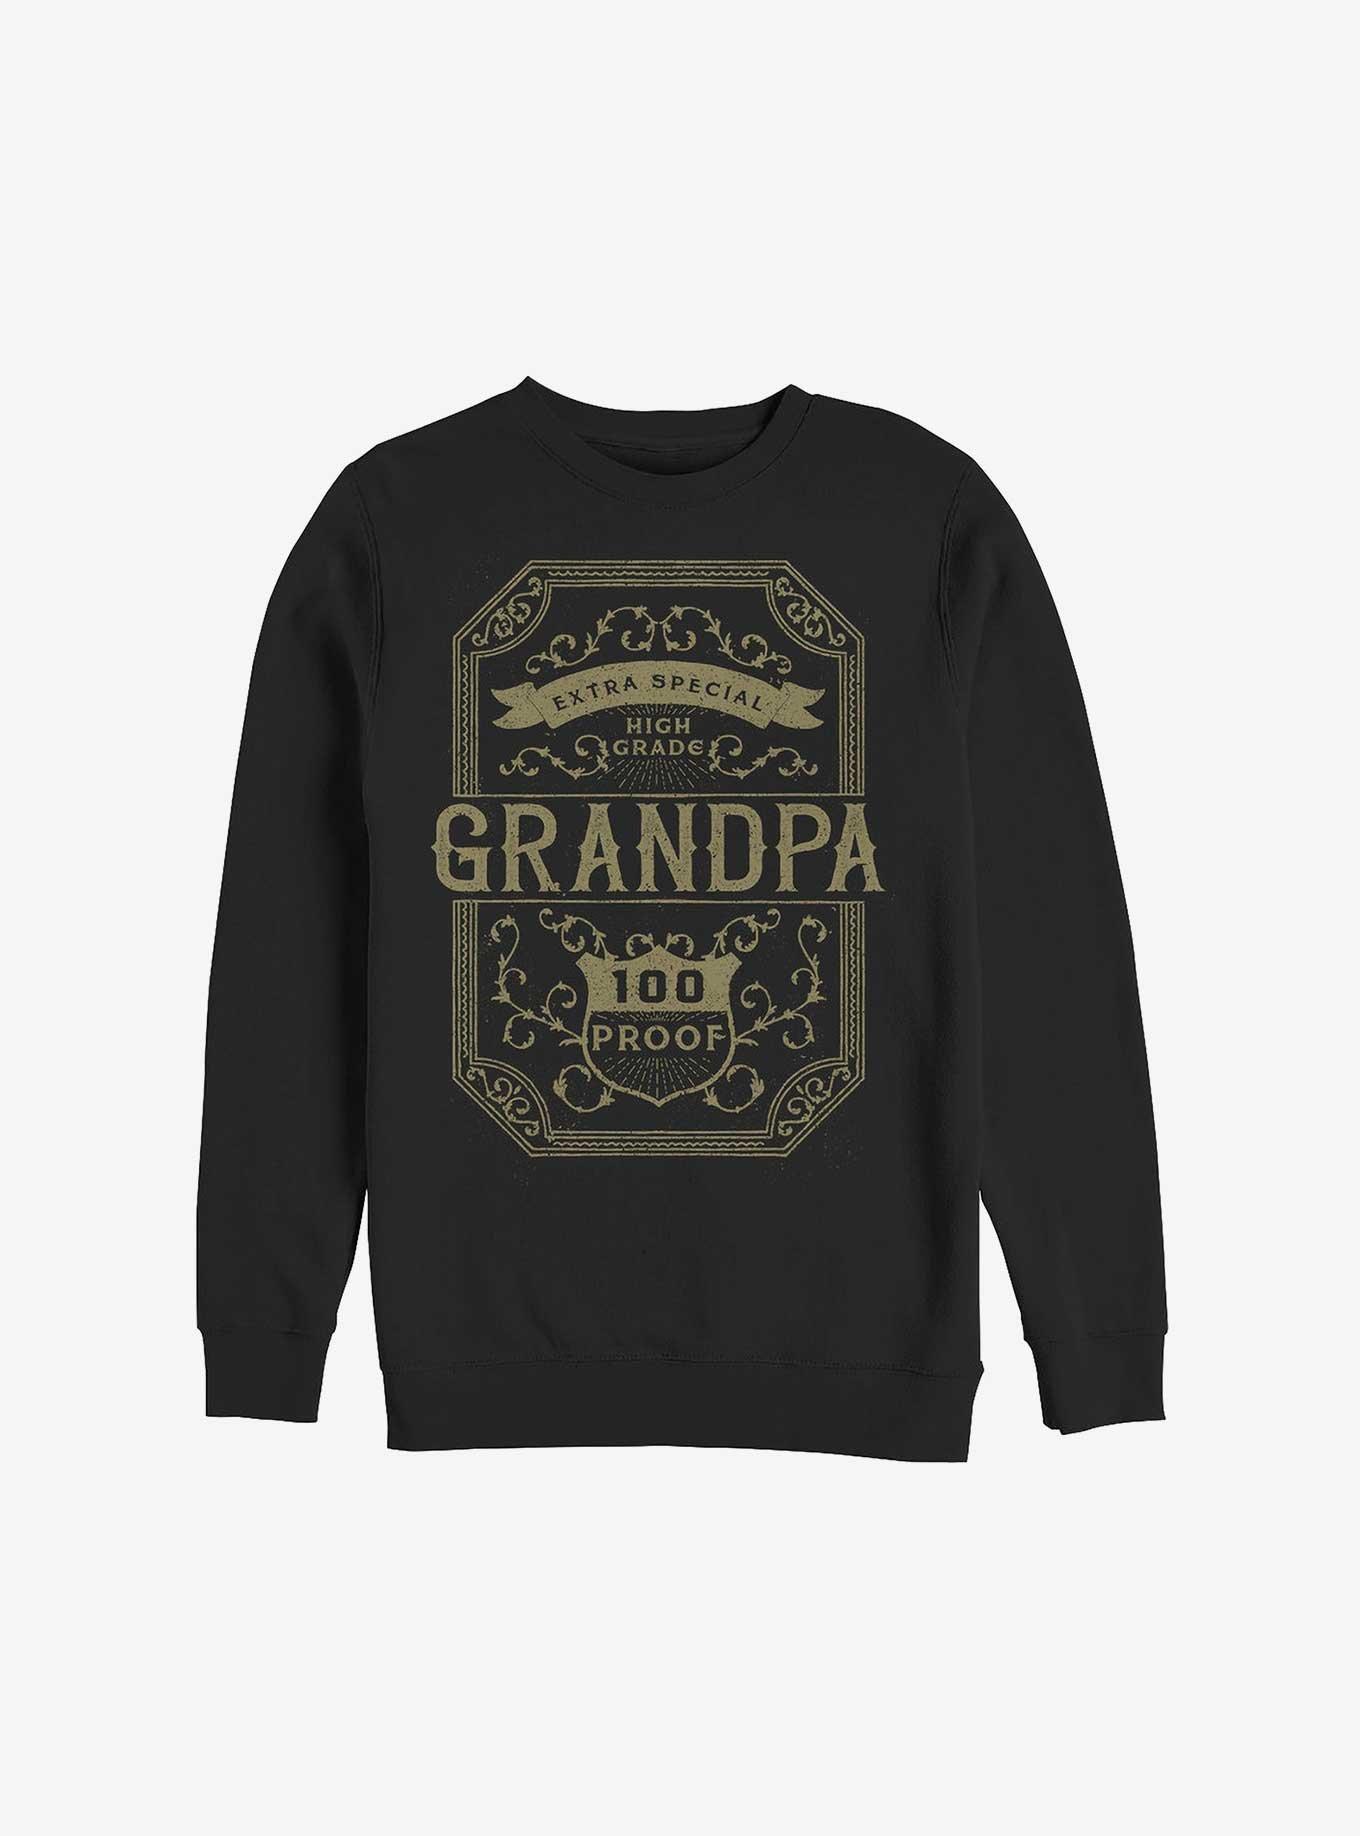 High Grade Grandpa Sweatshirt, BLACK, hi-res